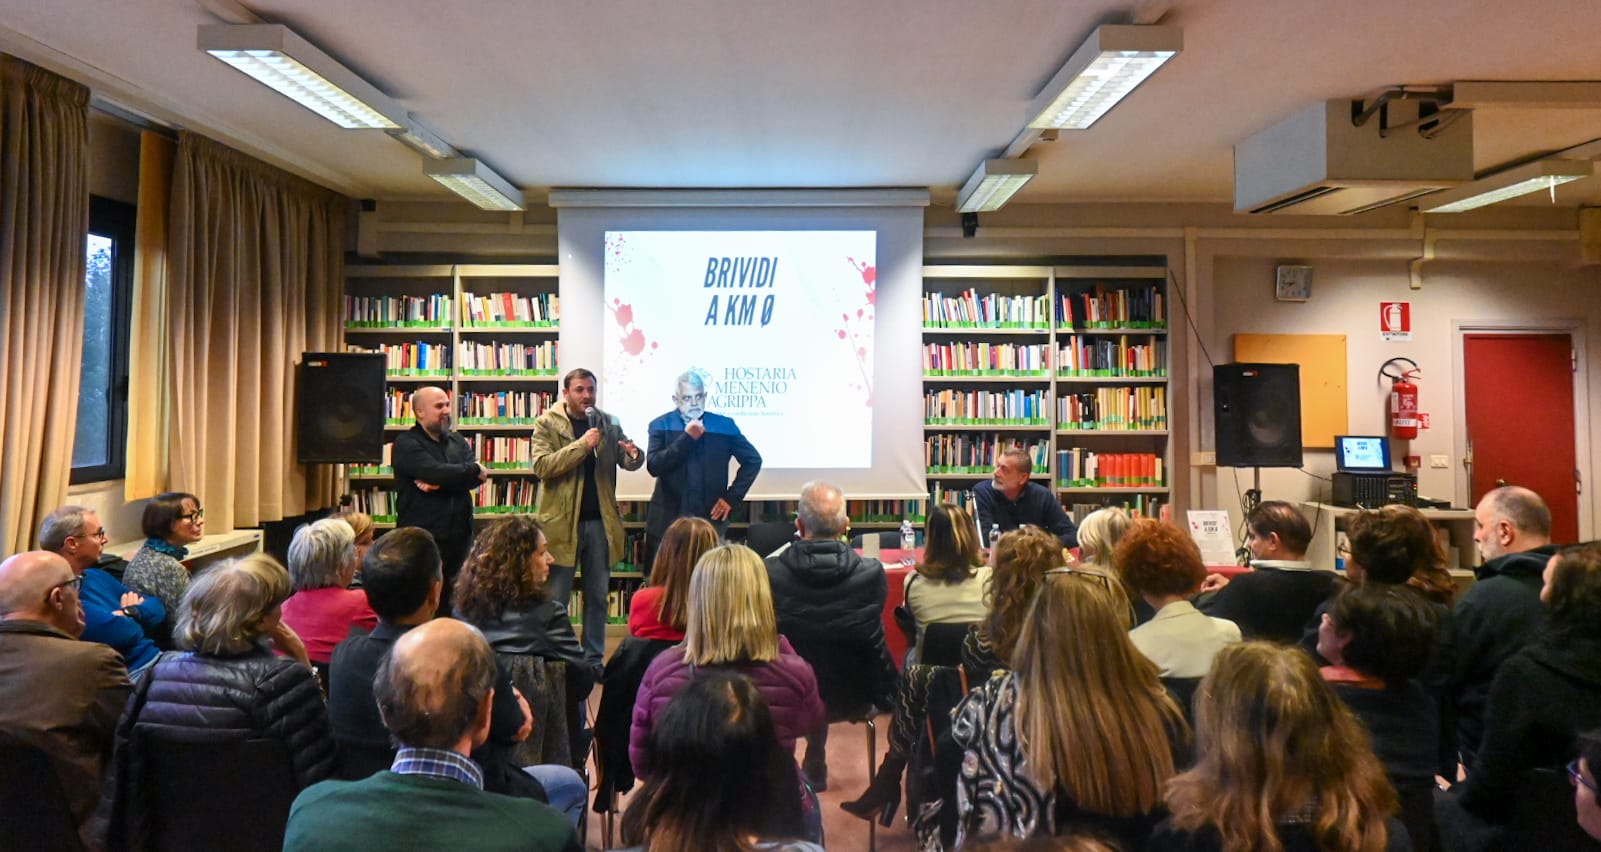 La 2a edizione di Brividi a KM0 è stata un successo, appuntamento al 2025 a Roma per il festival dedicato alla letteratura di genere.